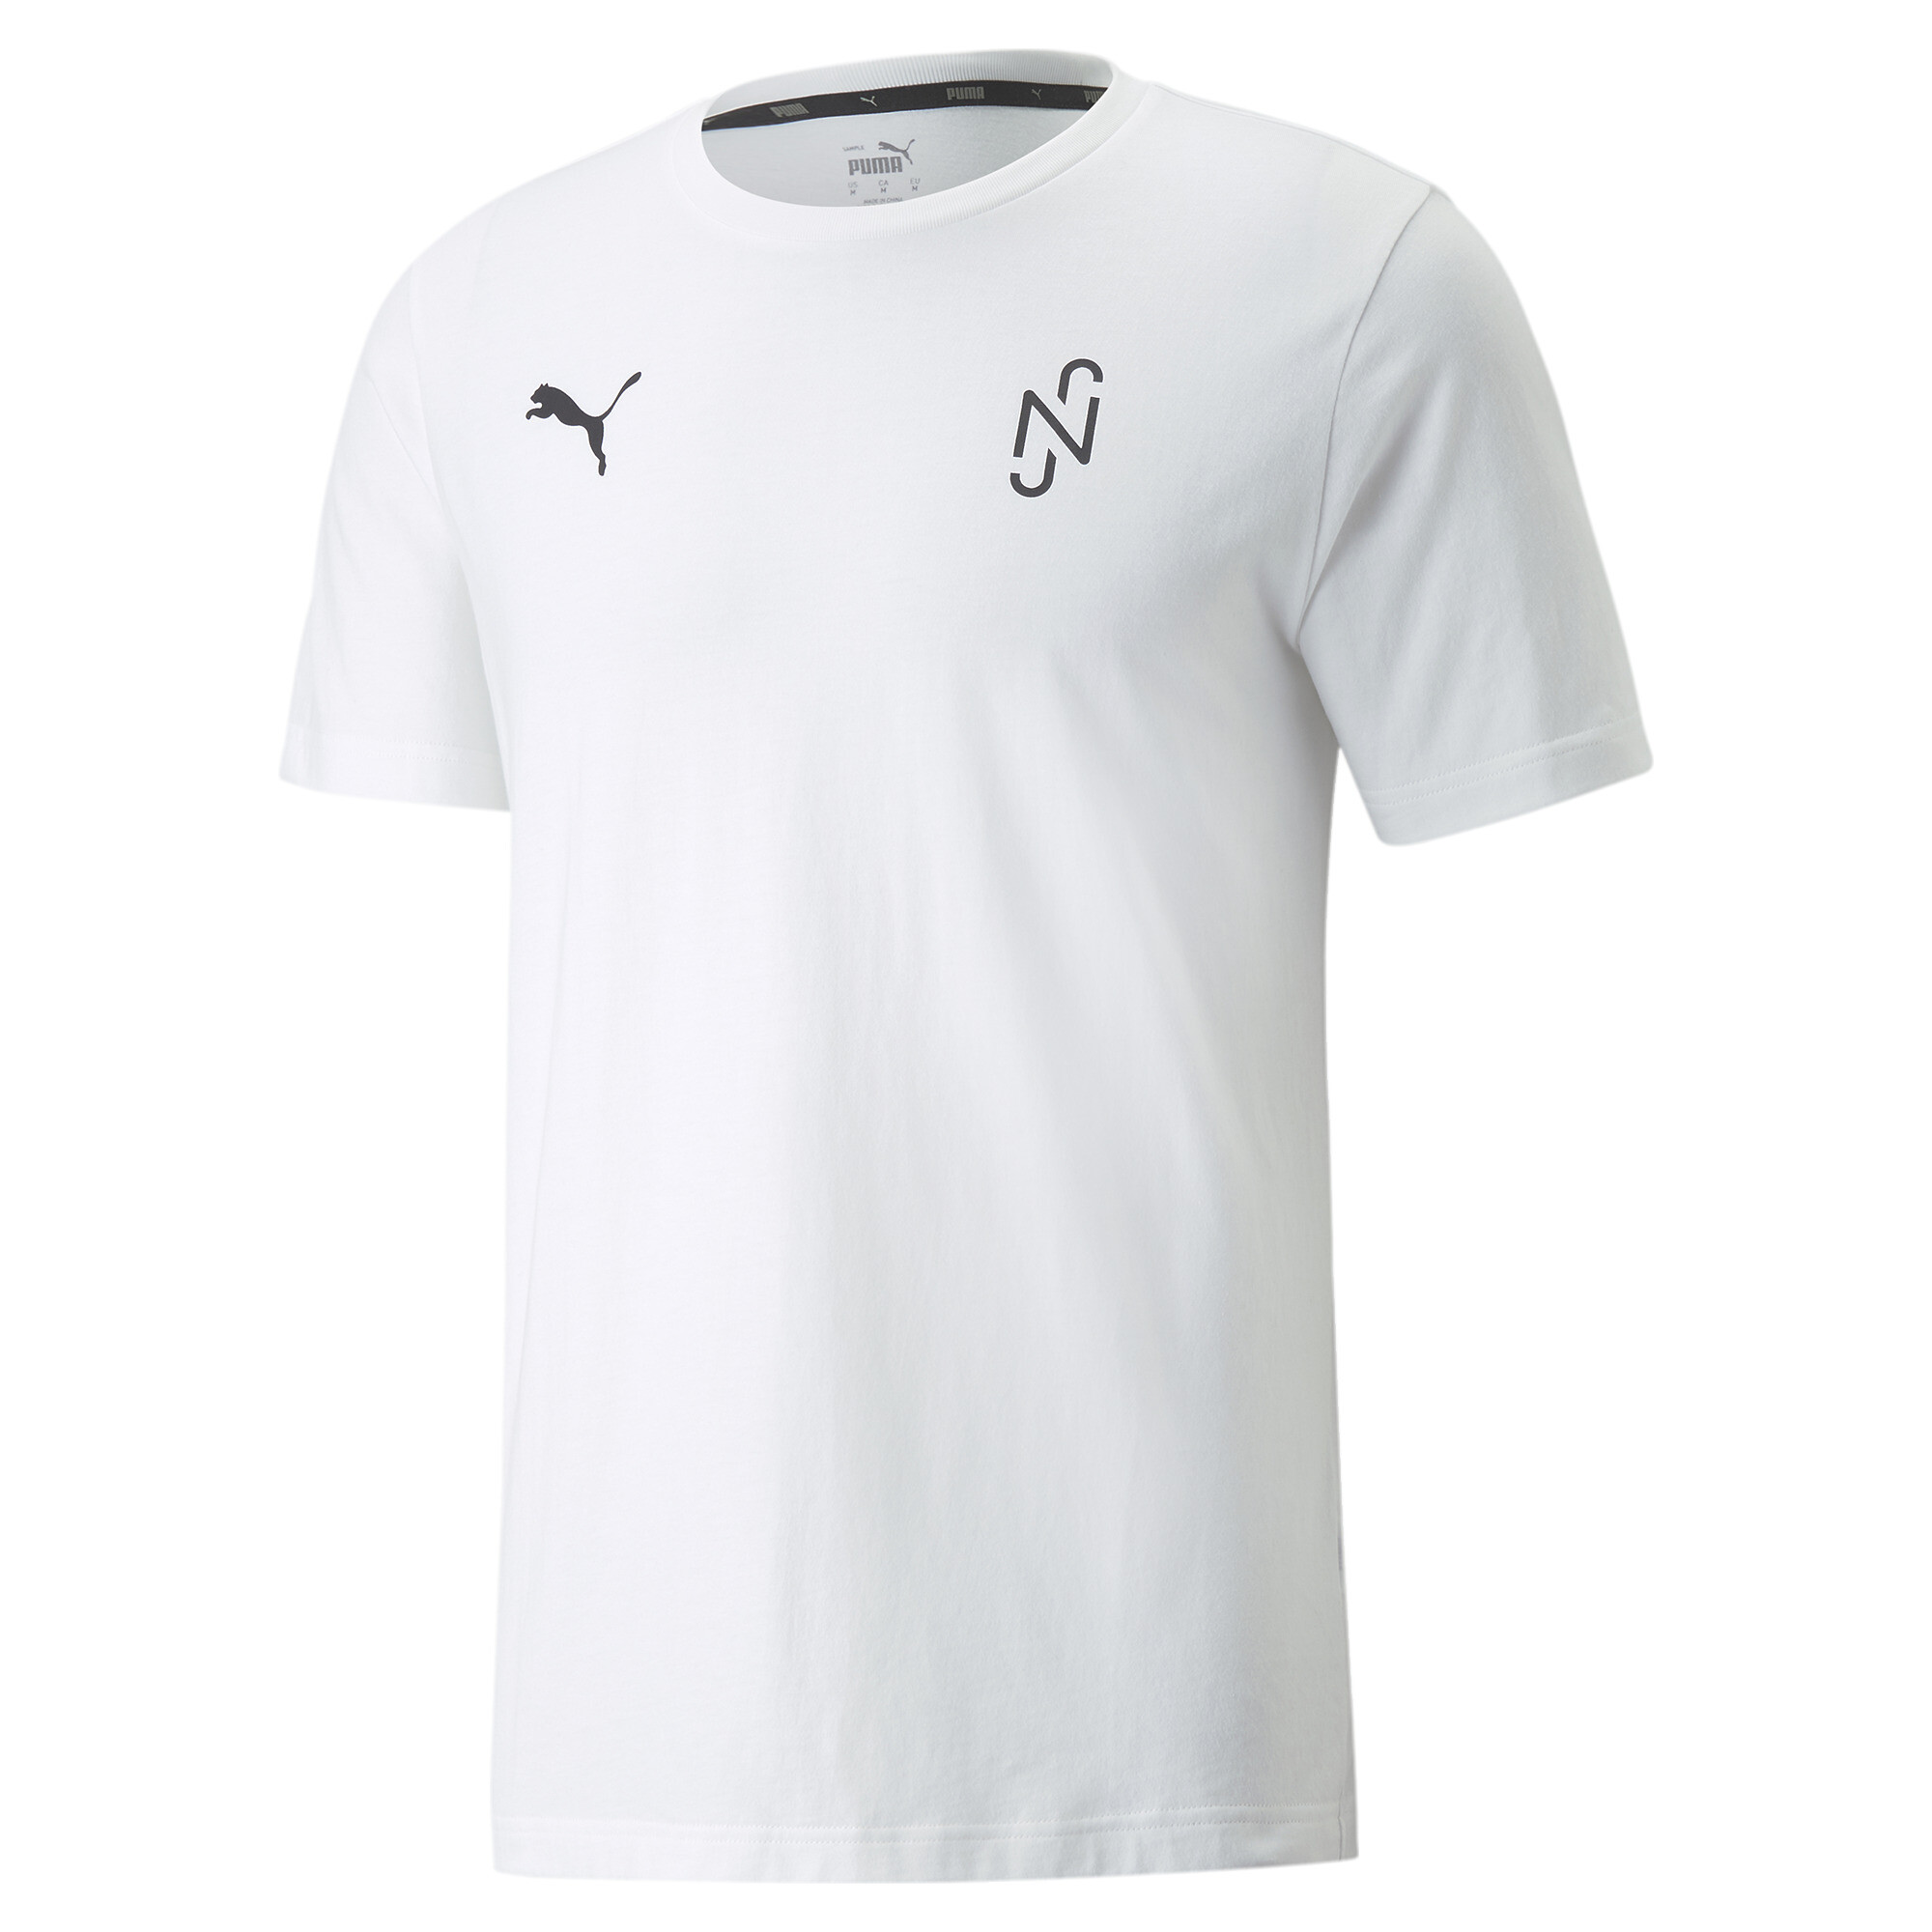  プーマ メンズ サッカー NEYMAR JR THRILL グラフィック 半袖 Tシャツ メンズ Puma White ｜PUMA.com